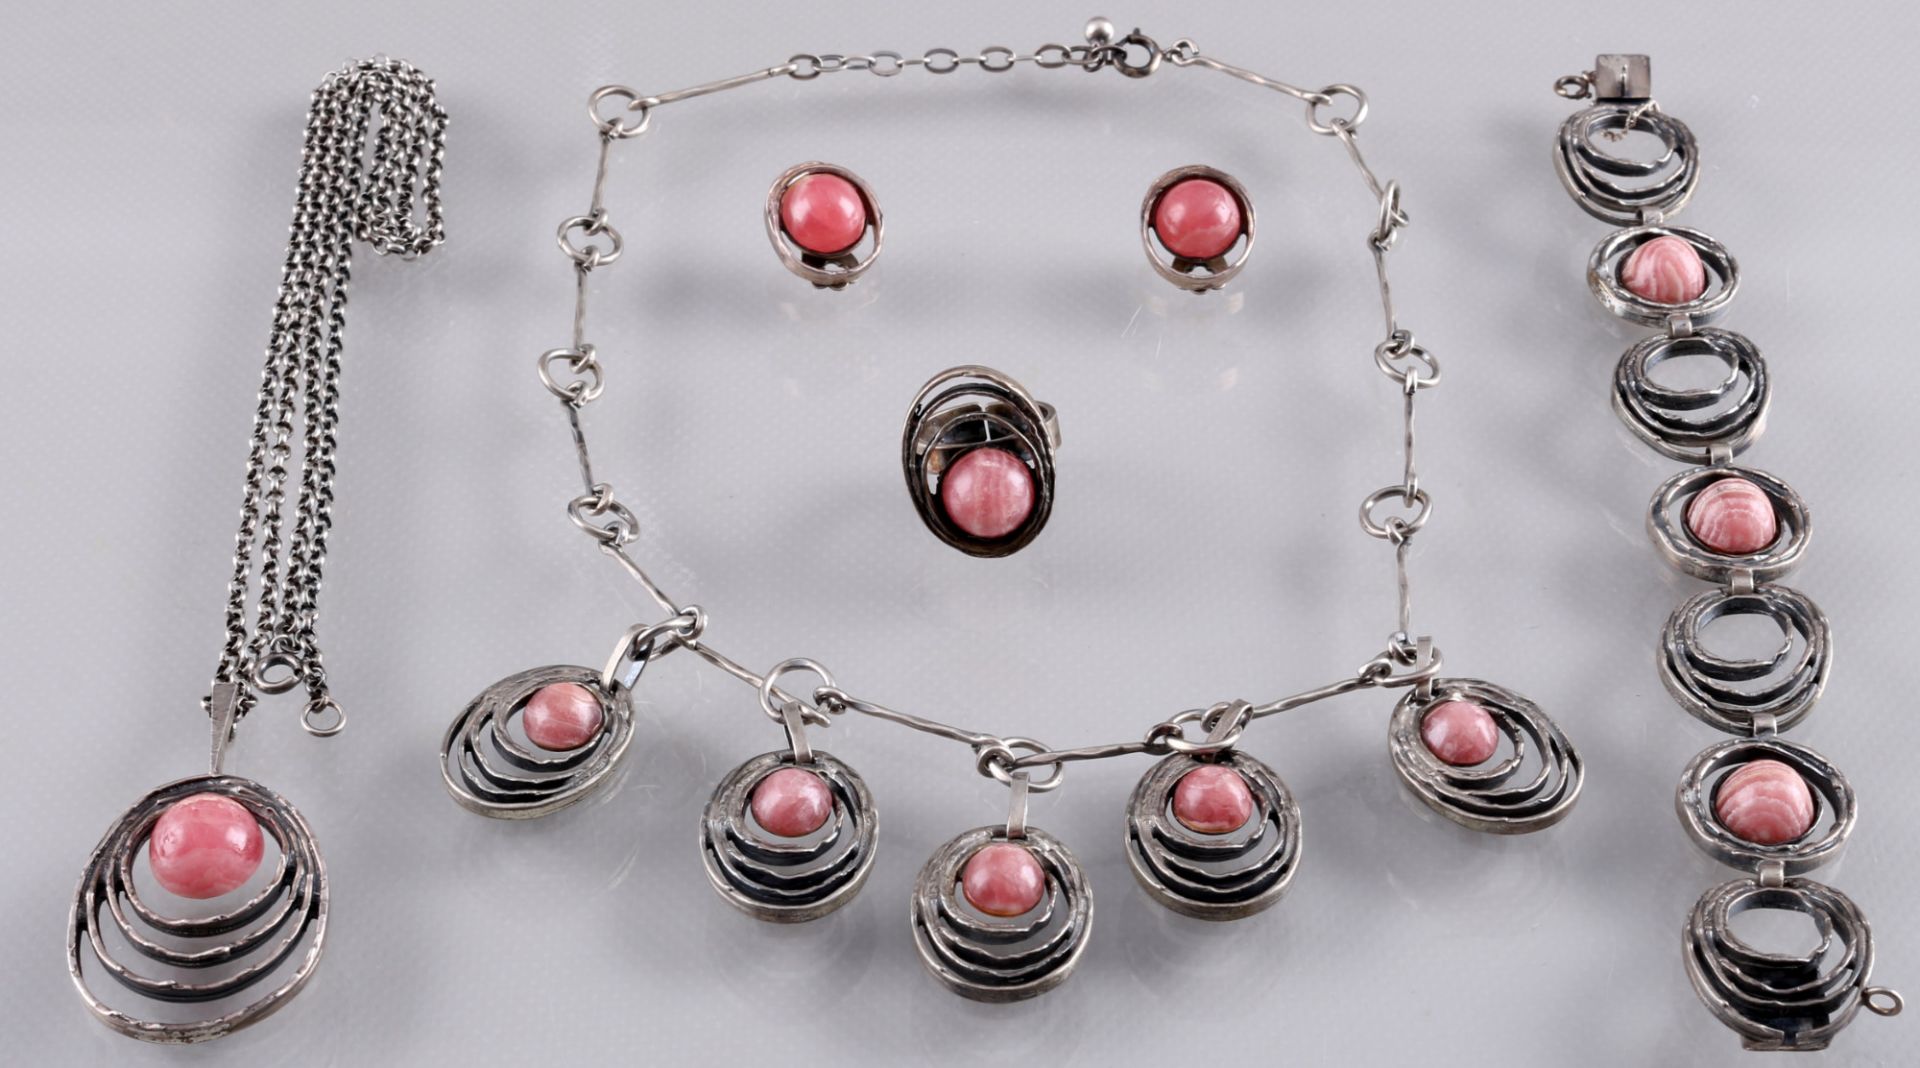 800-835 silver rhodochrosite jewelry set, Silber Rhodochrosit Schmuckset,